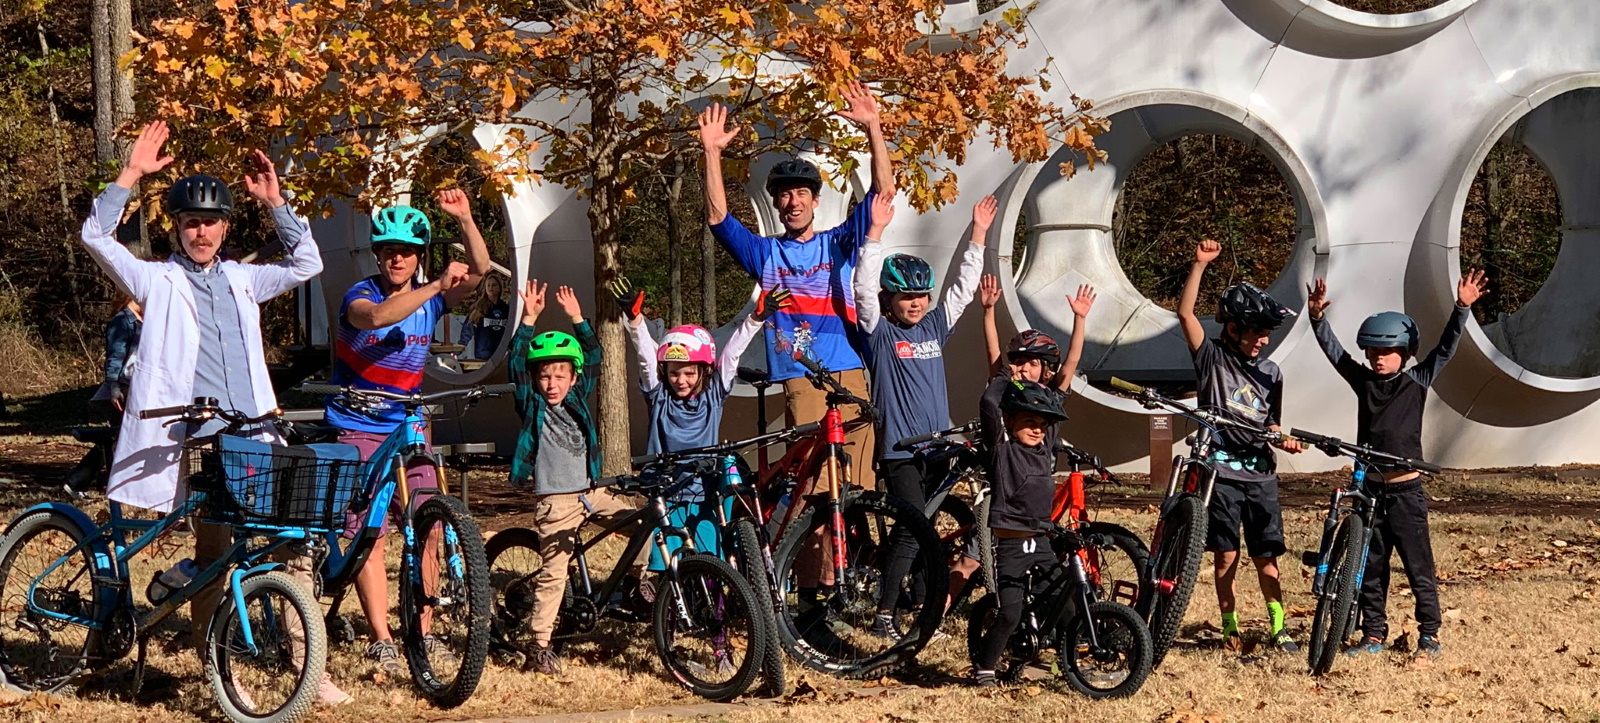 Kids bicycling and biking in Bentonville, Arkansas